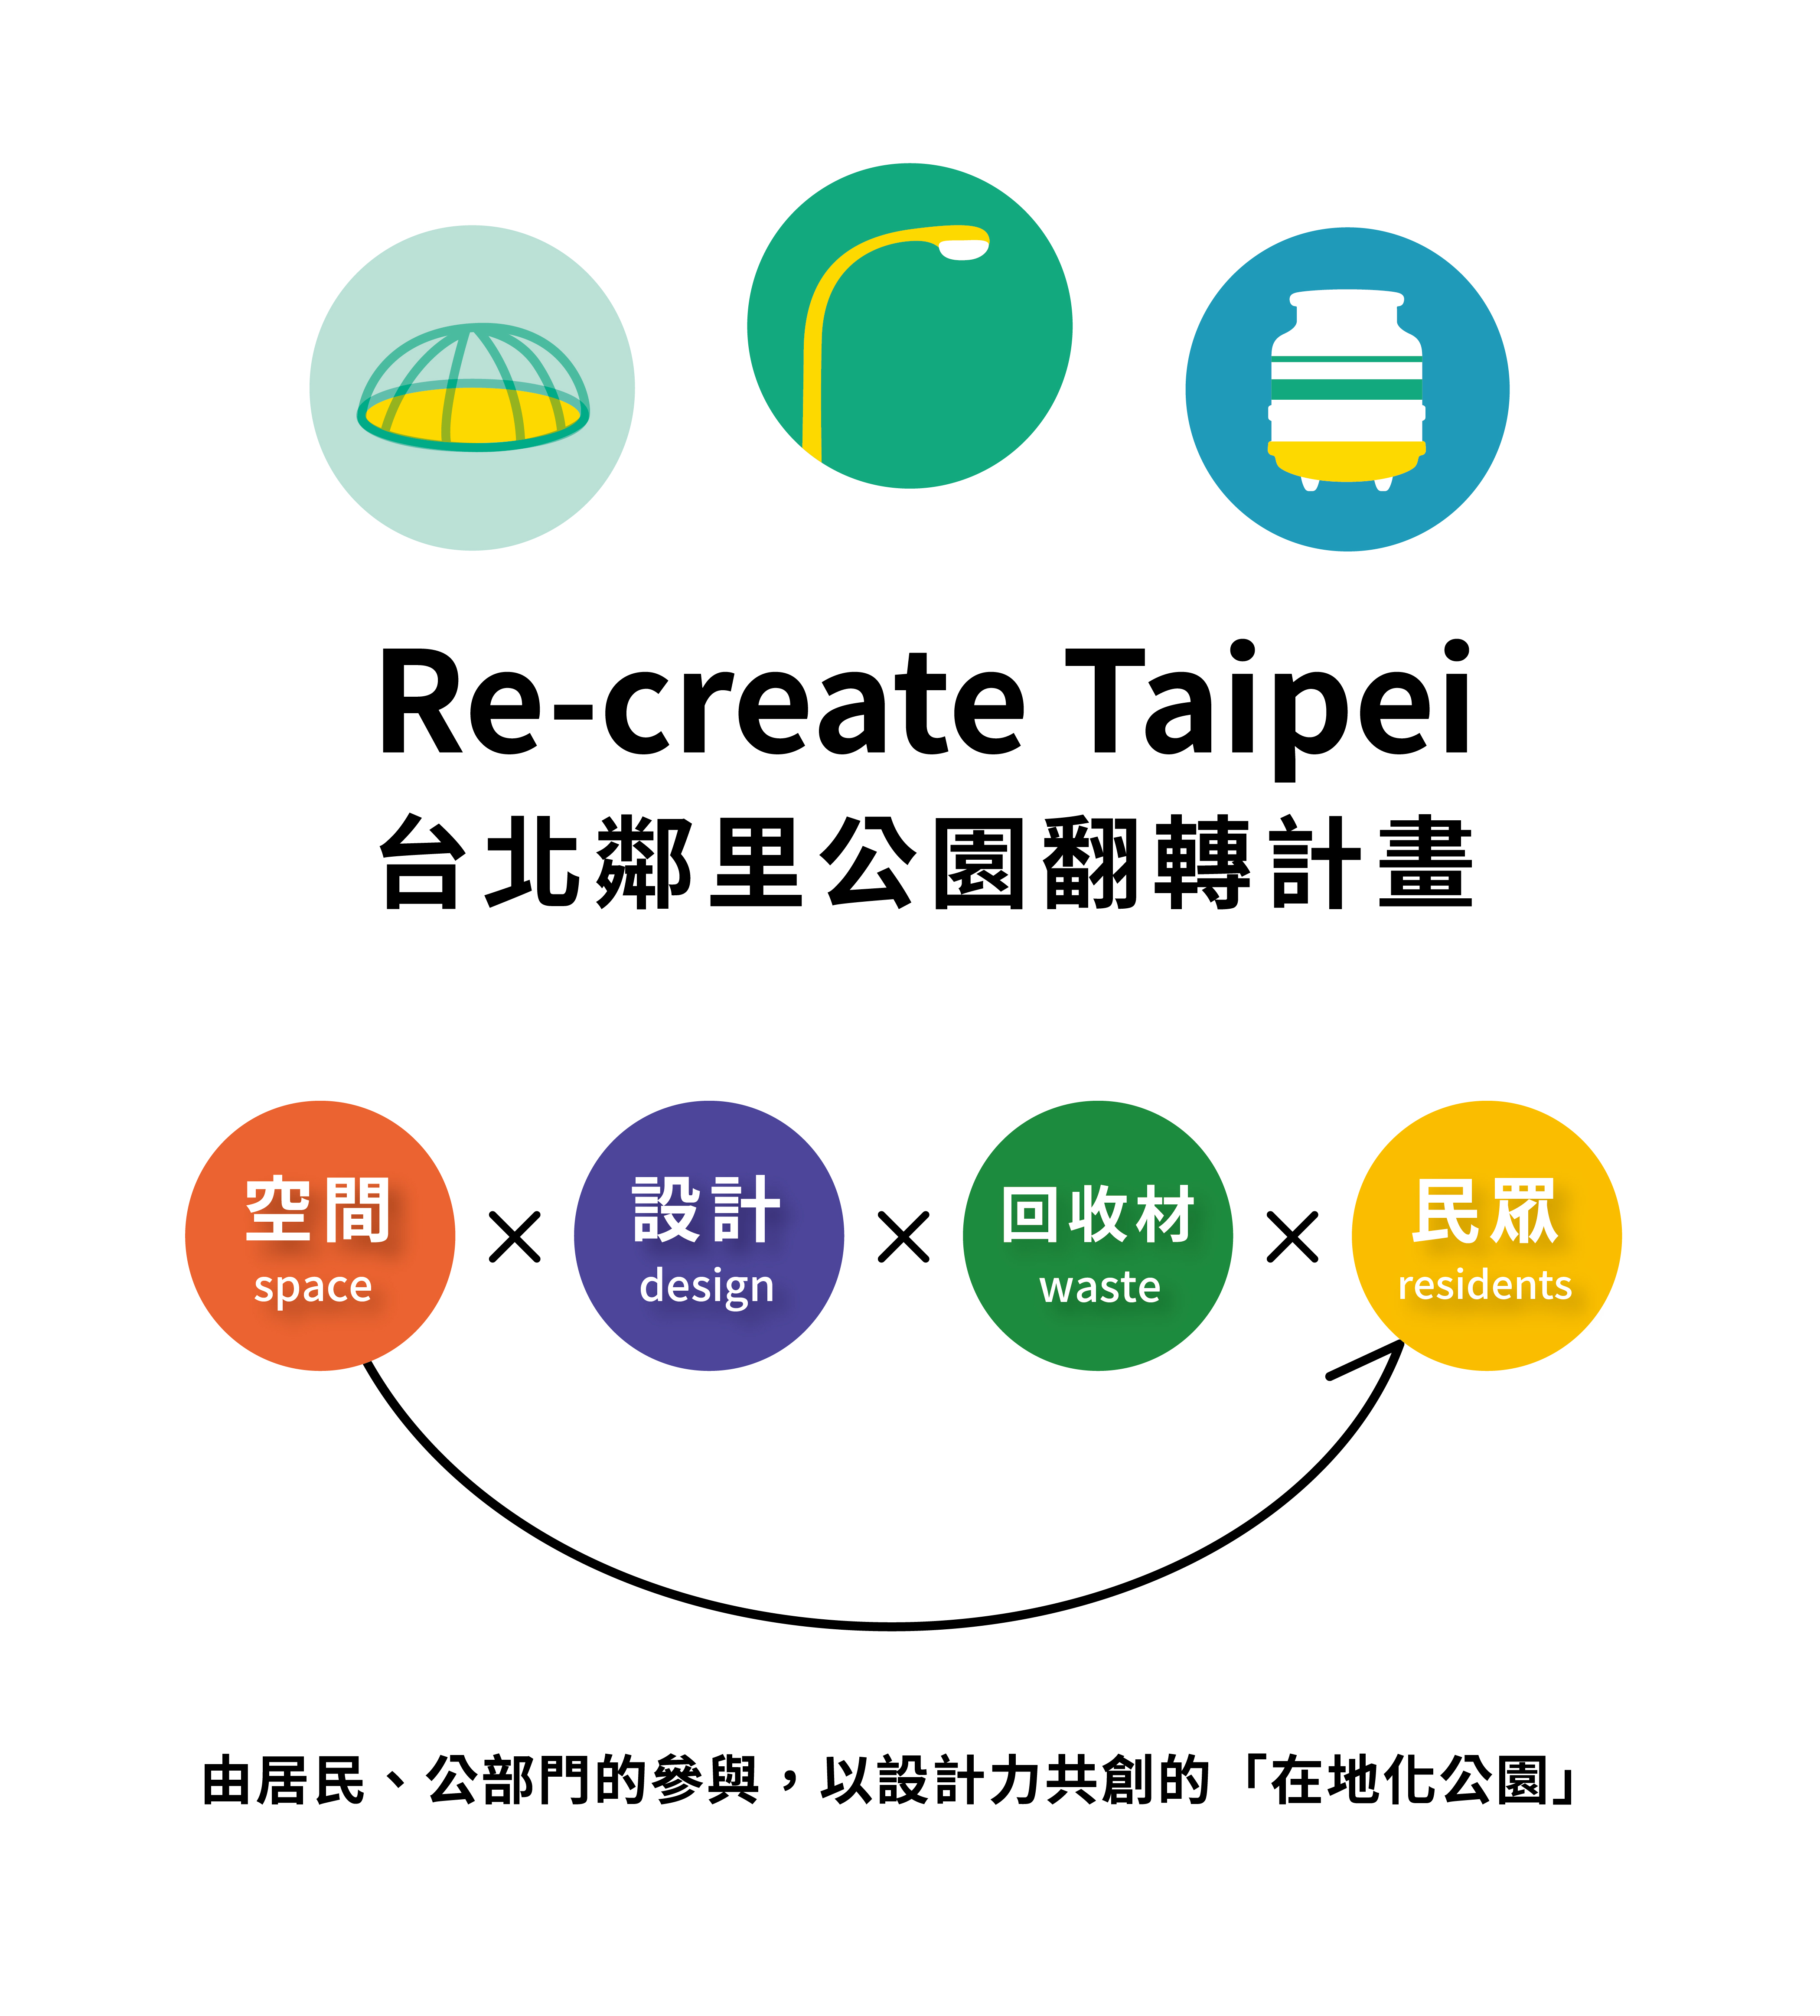 都市酵母, 水越設計, basurama, 台北鄰里公園翻轉計畫, re-create Taipei, 2016台北世界設計之都, WDC Taipei, world design capital Taipei, park, 公園, 公共空間,recreate,taipei,Re-create Taipei